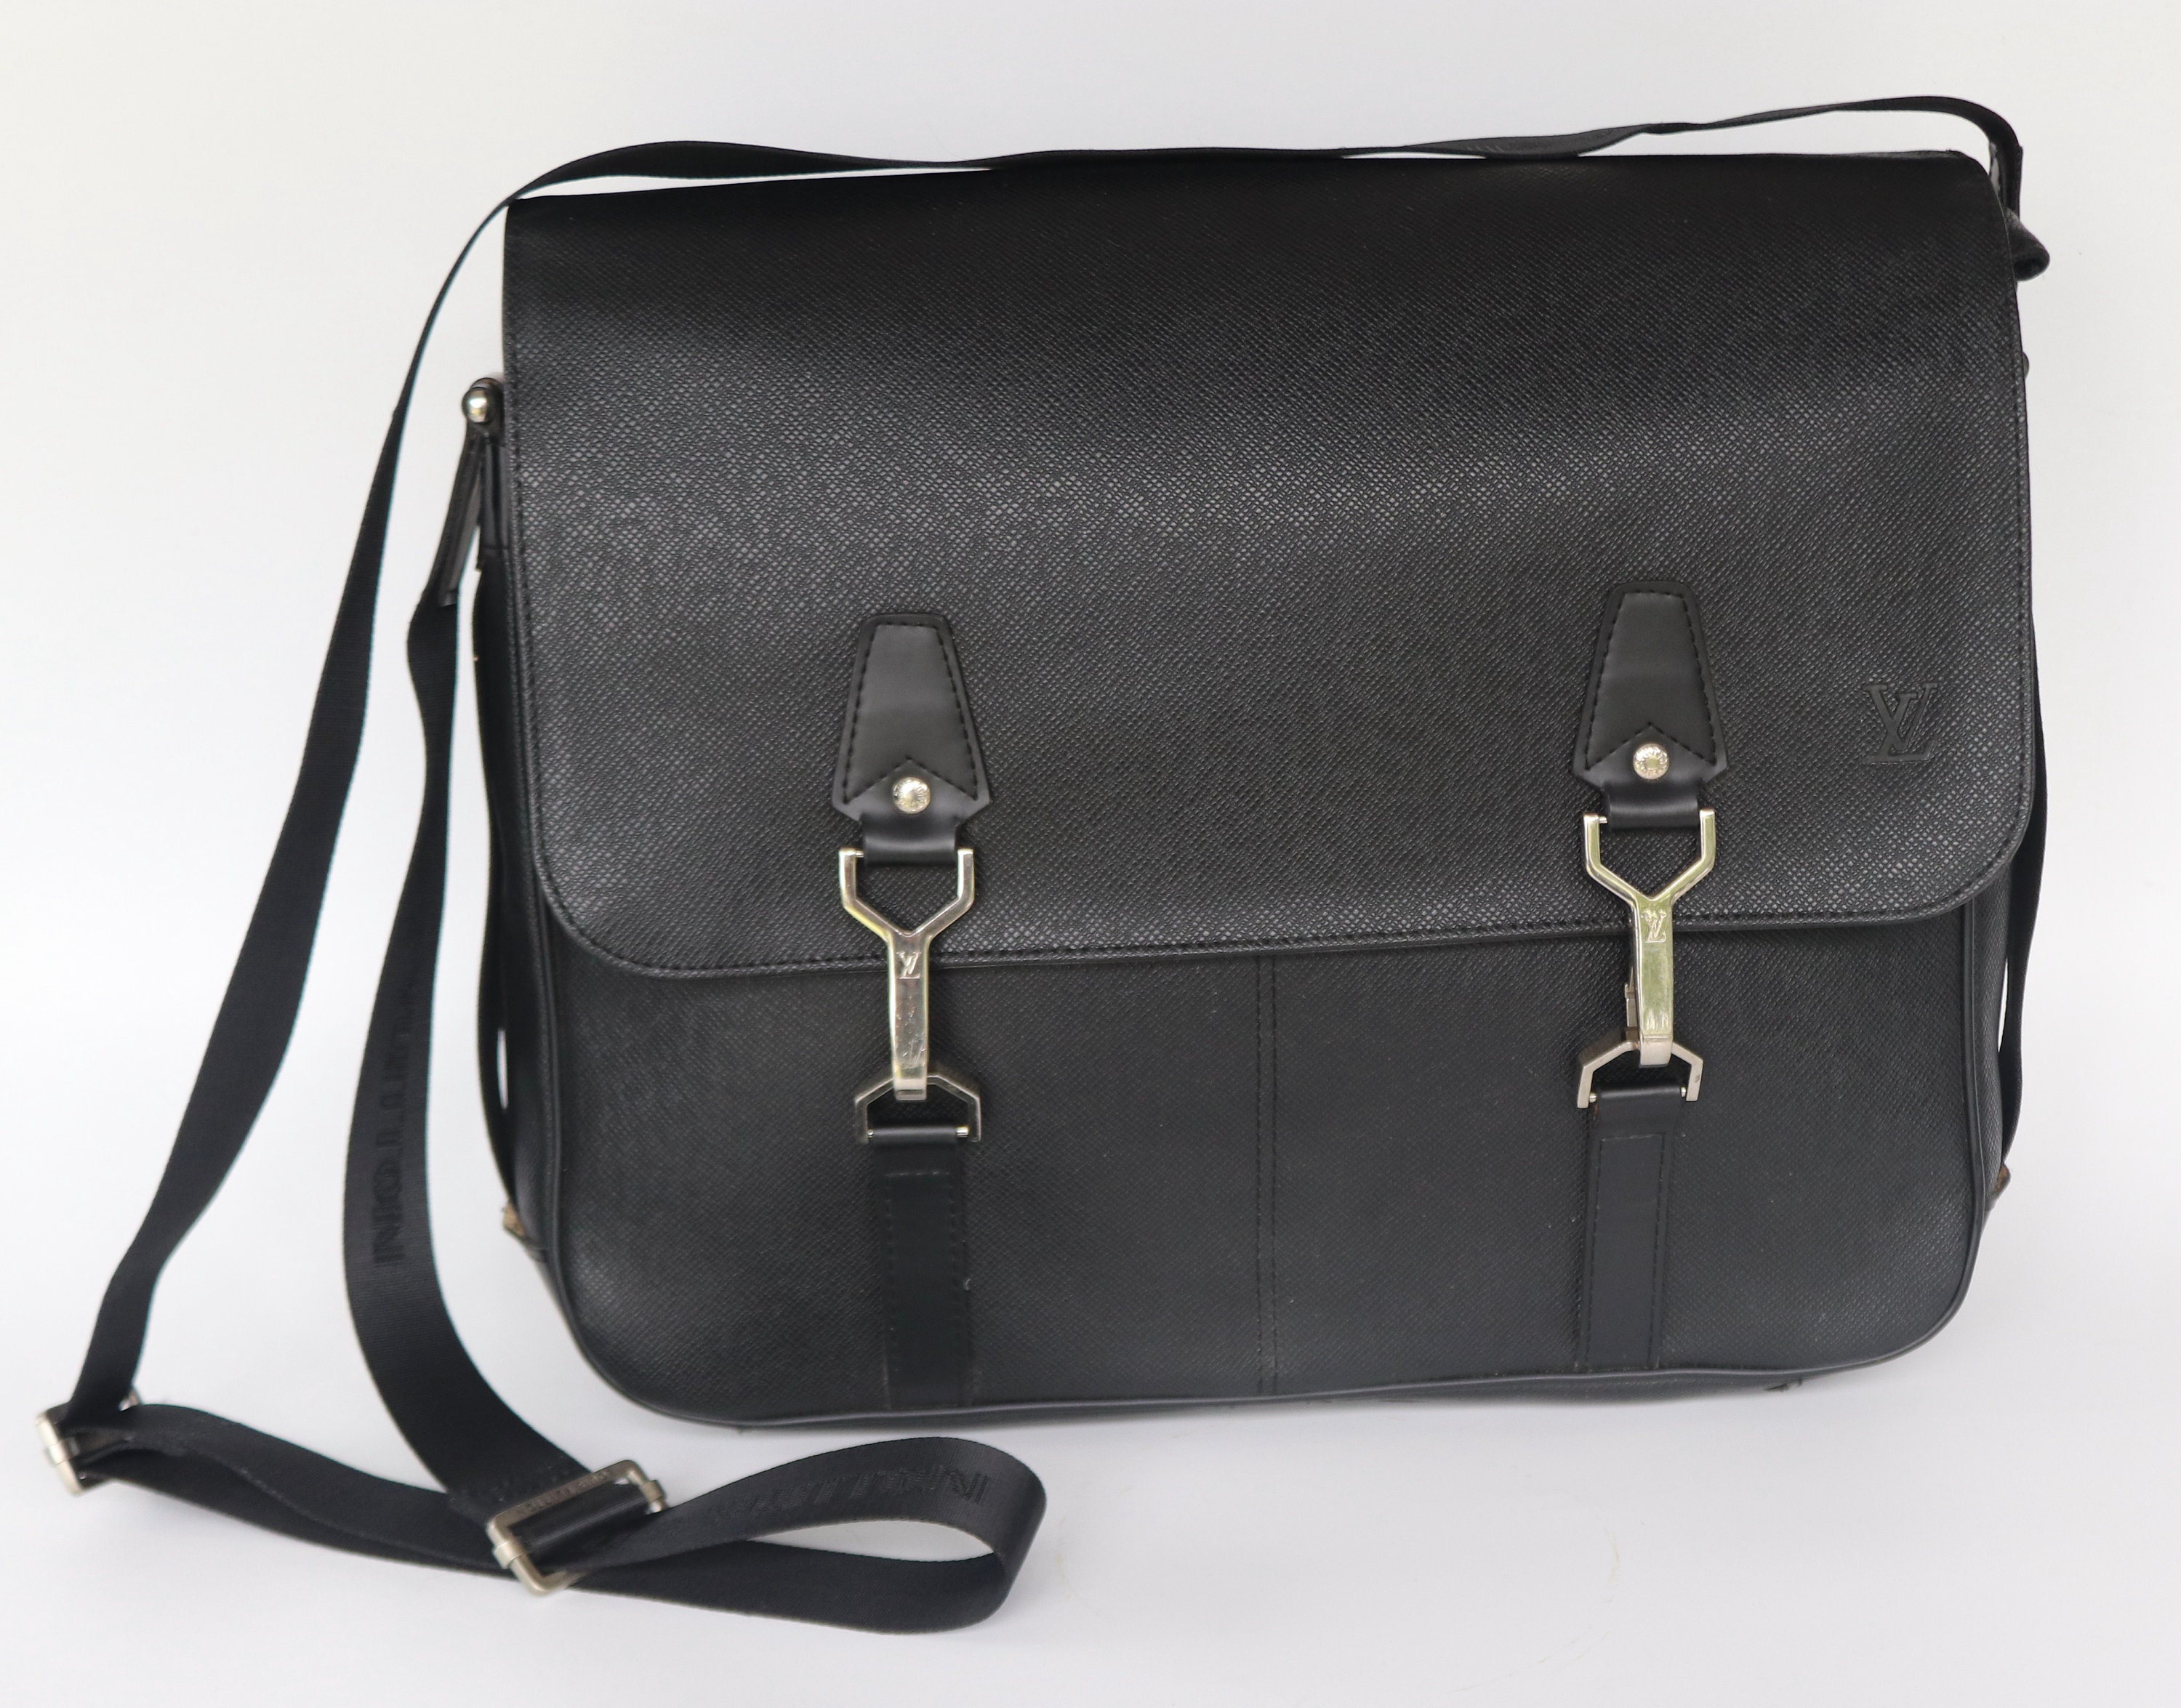 Louis Vuitton studio messenger schoudertas donkergrijs/zwart